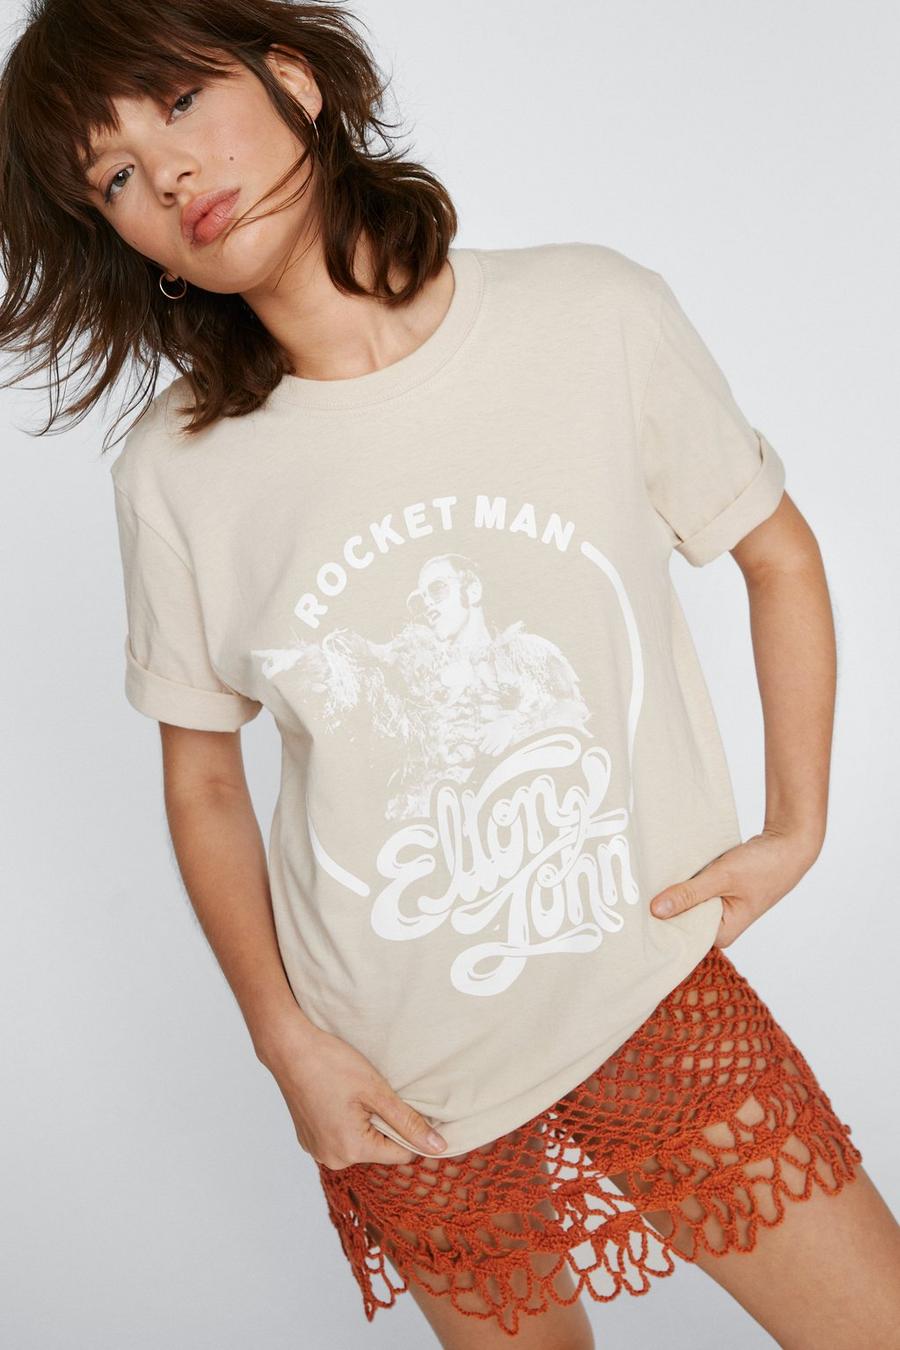 Elton John ‘Rocket Man’ Graphic T-Shirt